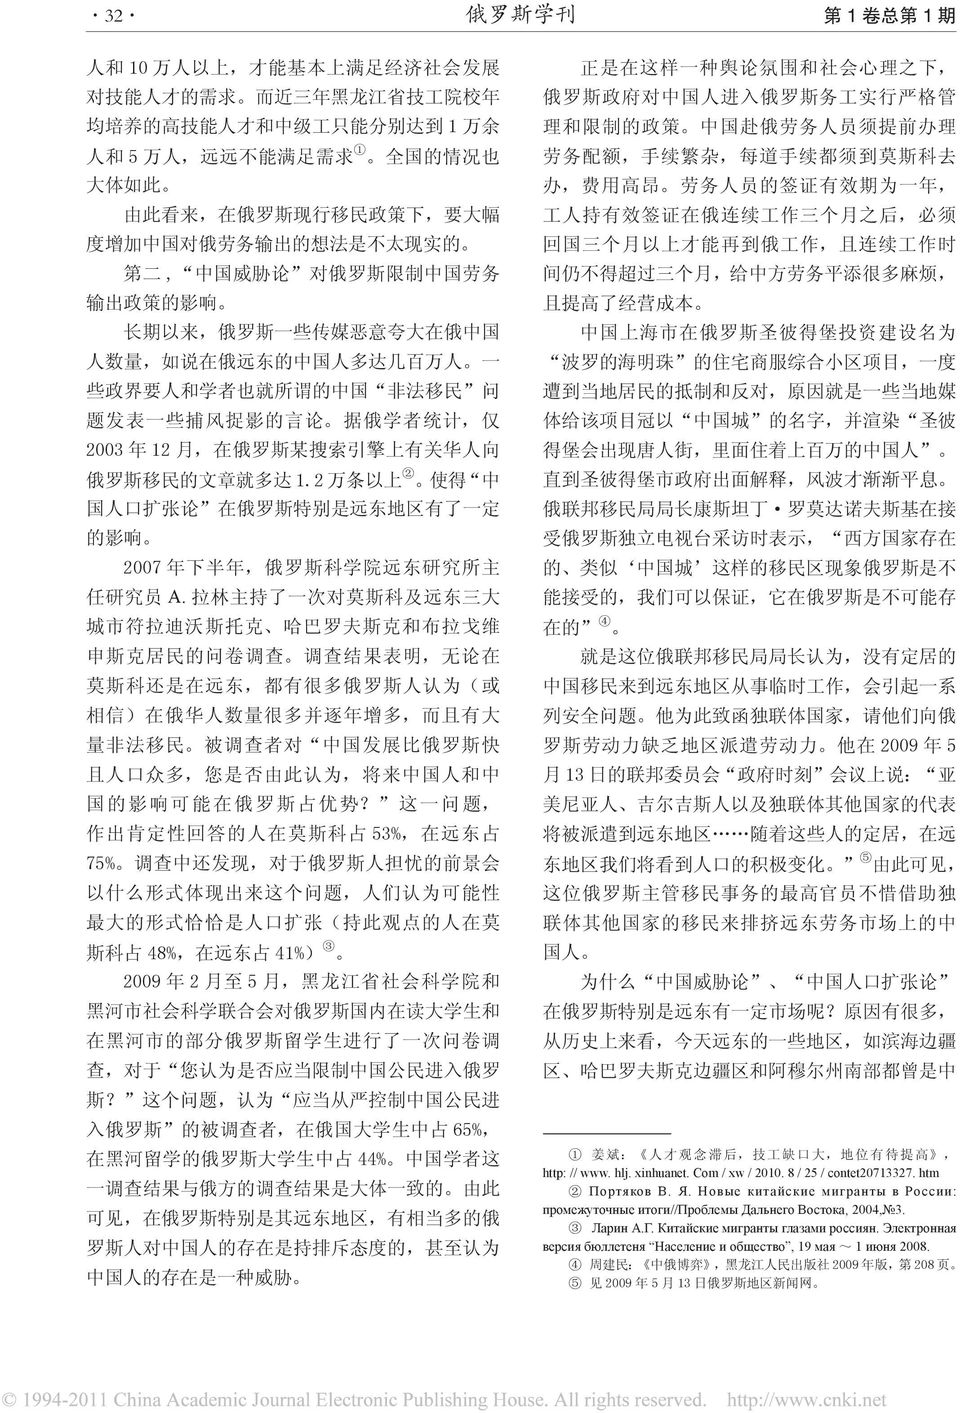 达 几 百 万 人 一 些 政 界 要 人 和 学 者 也 就 所 谓 的 中 国 非 法 移 民 问 题 发 表 一 些 捕 风 捉 影 的 言 论 据 俄 学 者 统 计, 仅 2003 年 12 月, 在 俄 罗 斯 某 搜 索 引 擎 上 有 关 华 人 向 俄 罗 斯 移 民 的 文 章 就 多 达 1.